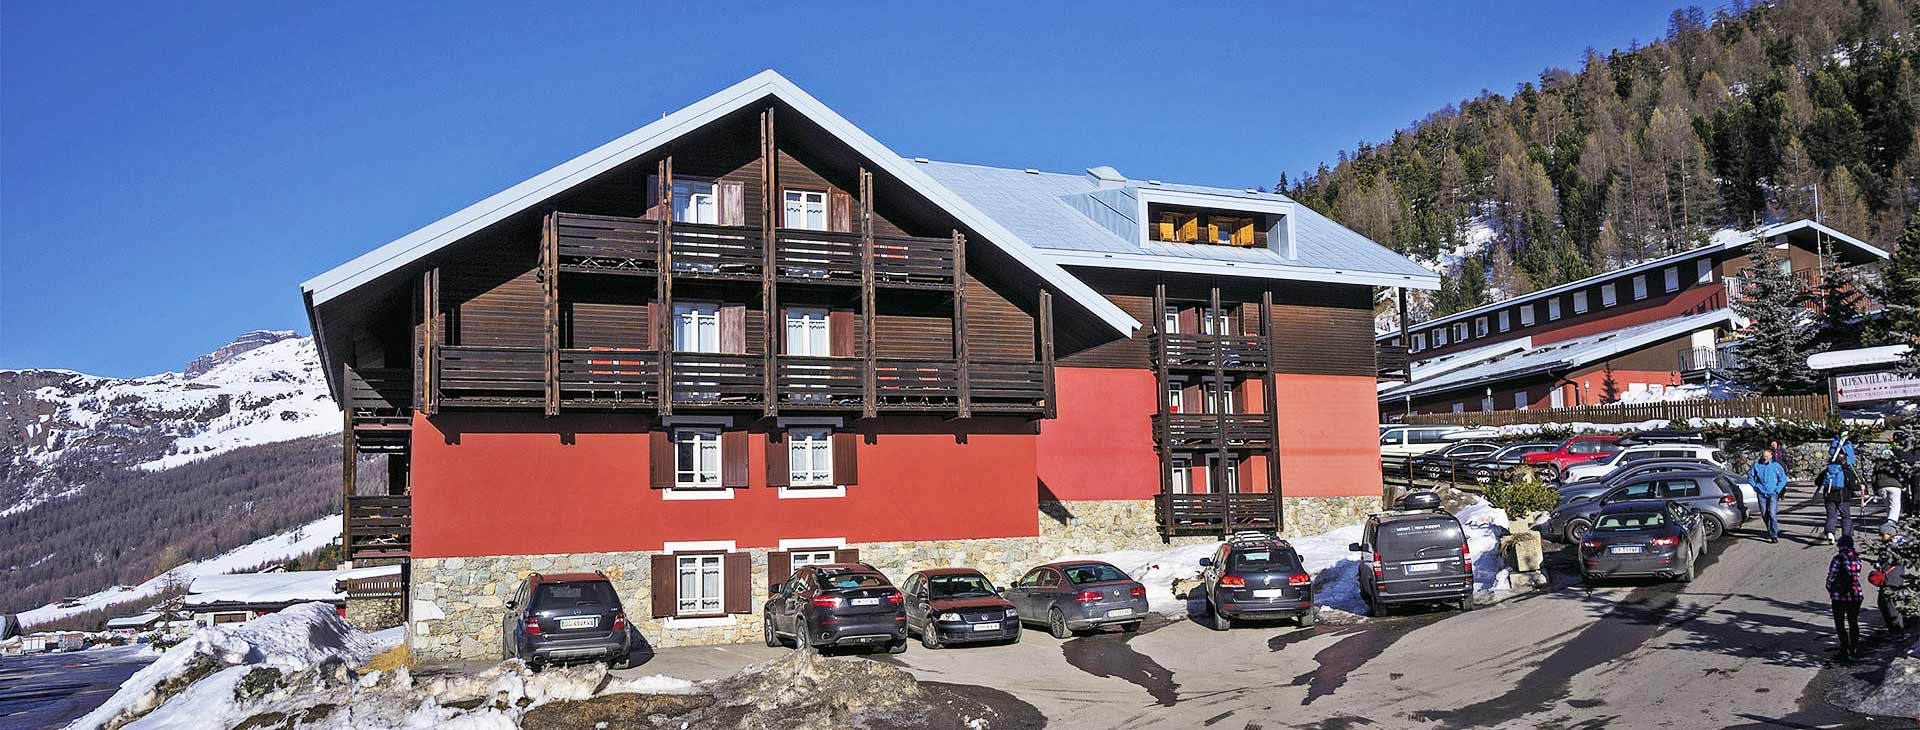 Alpen Hotel Village 